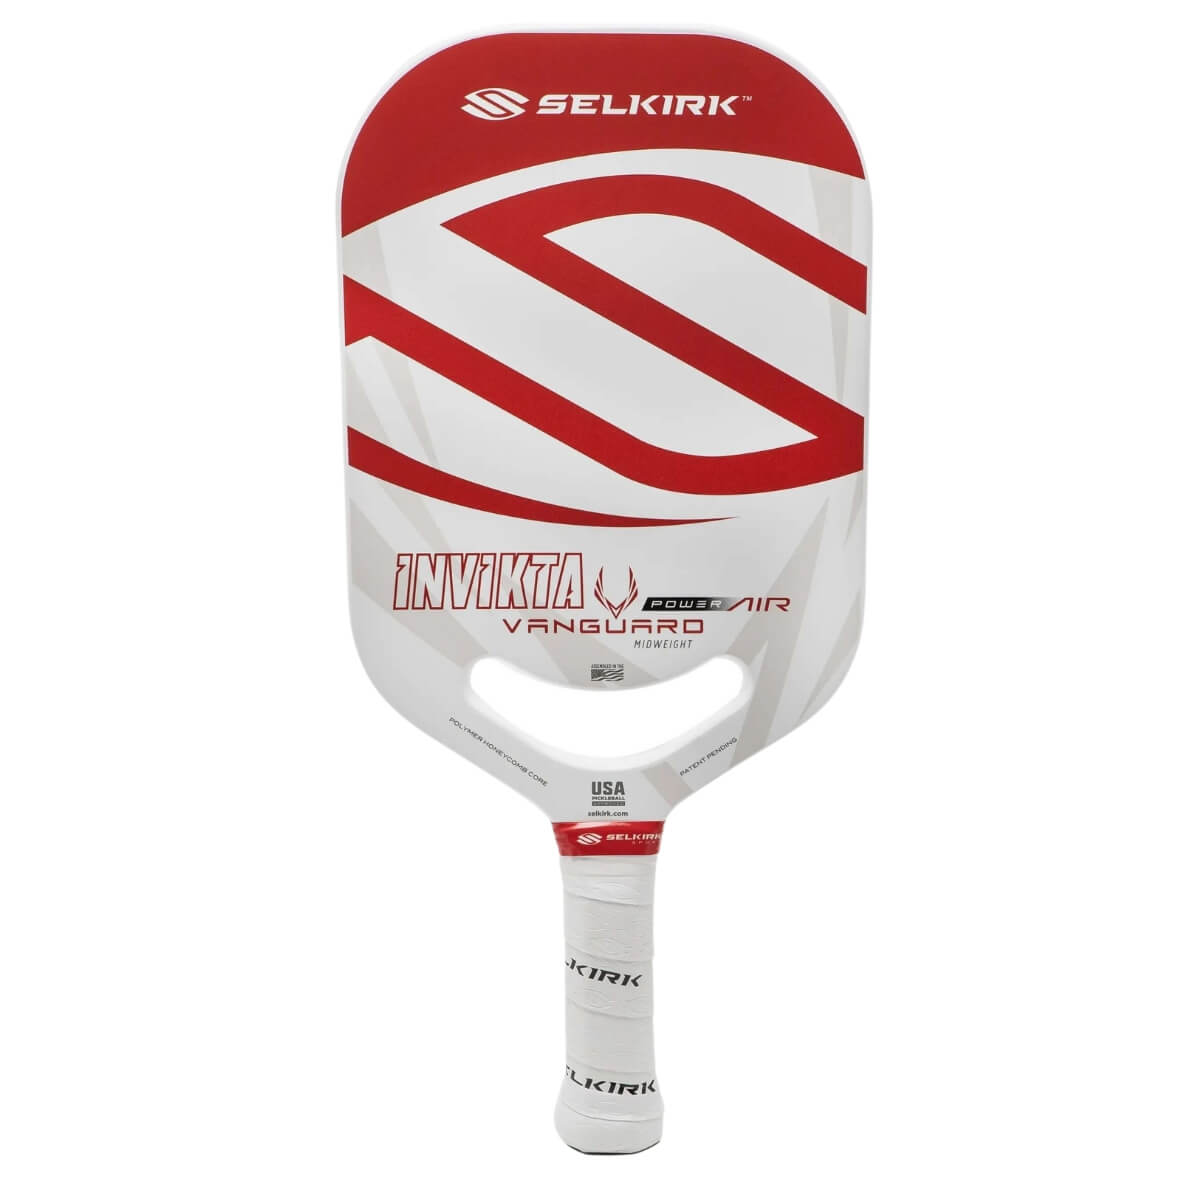 Selkirk Vanguard Power Air Invikta paddle / racket red front